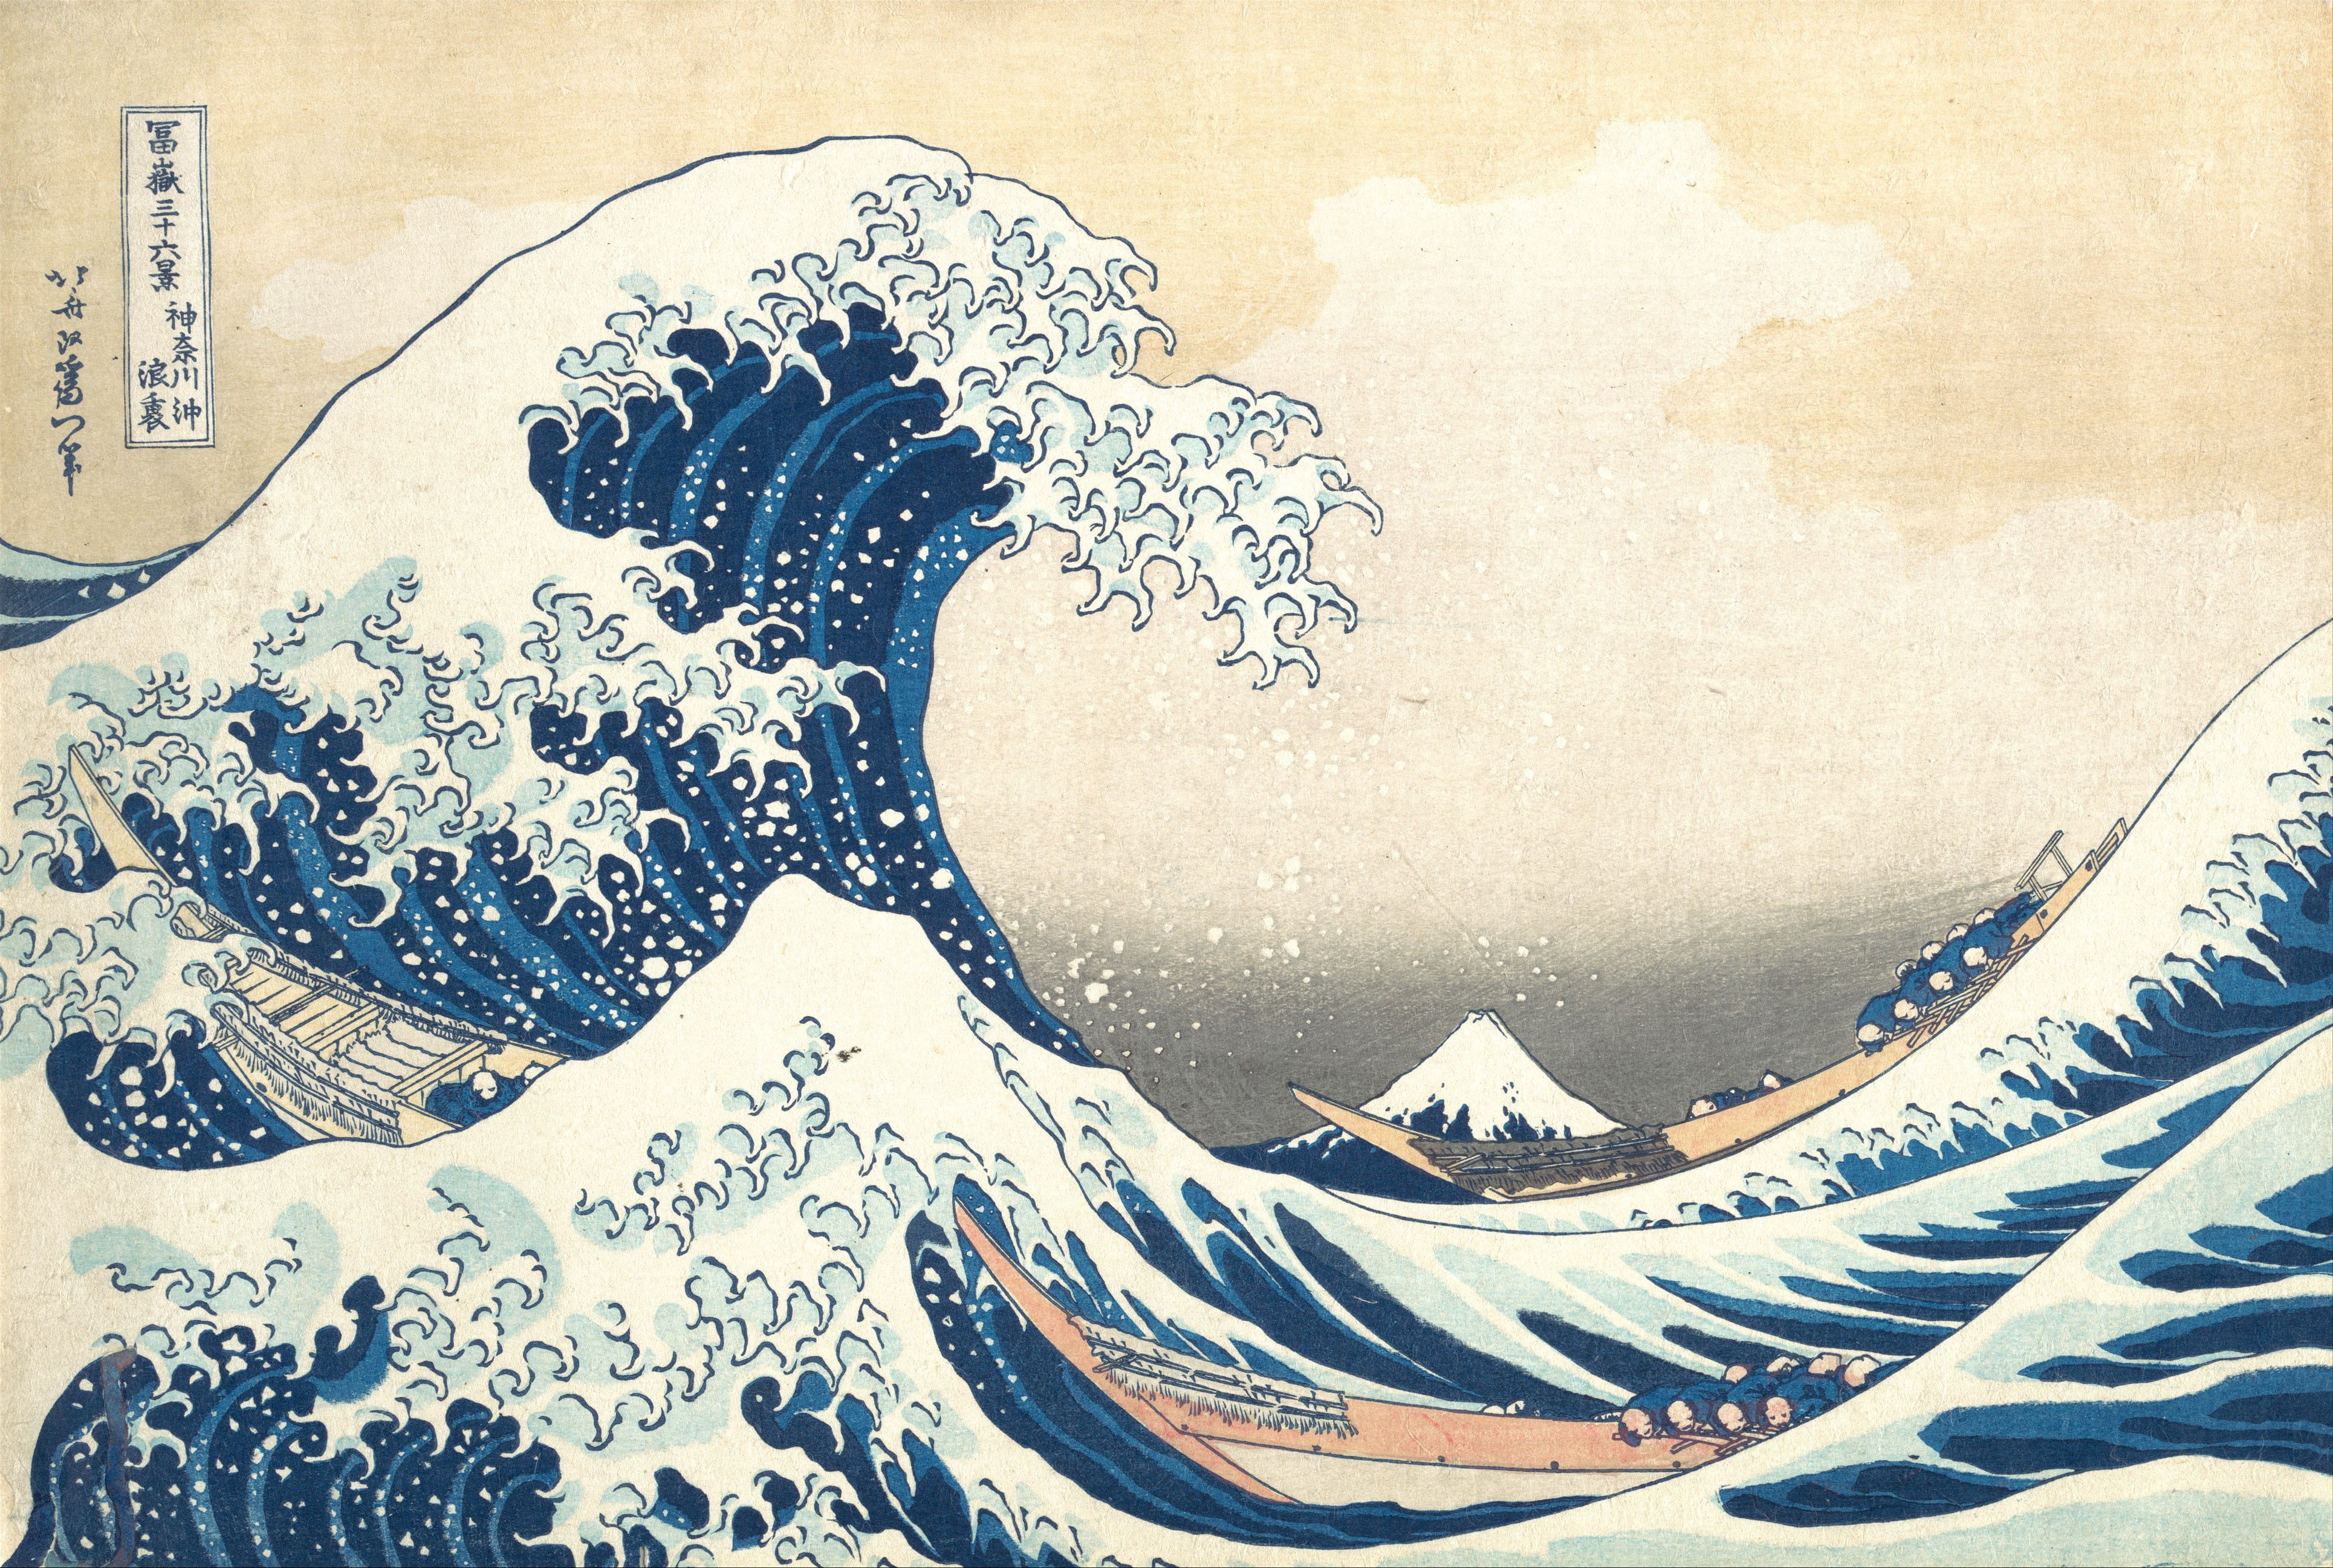 ocean wave illustration, Japan, artwork, pattern, art and craft